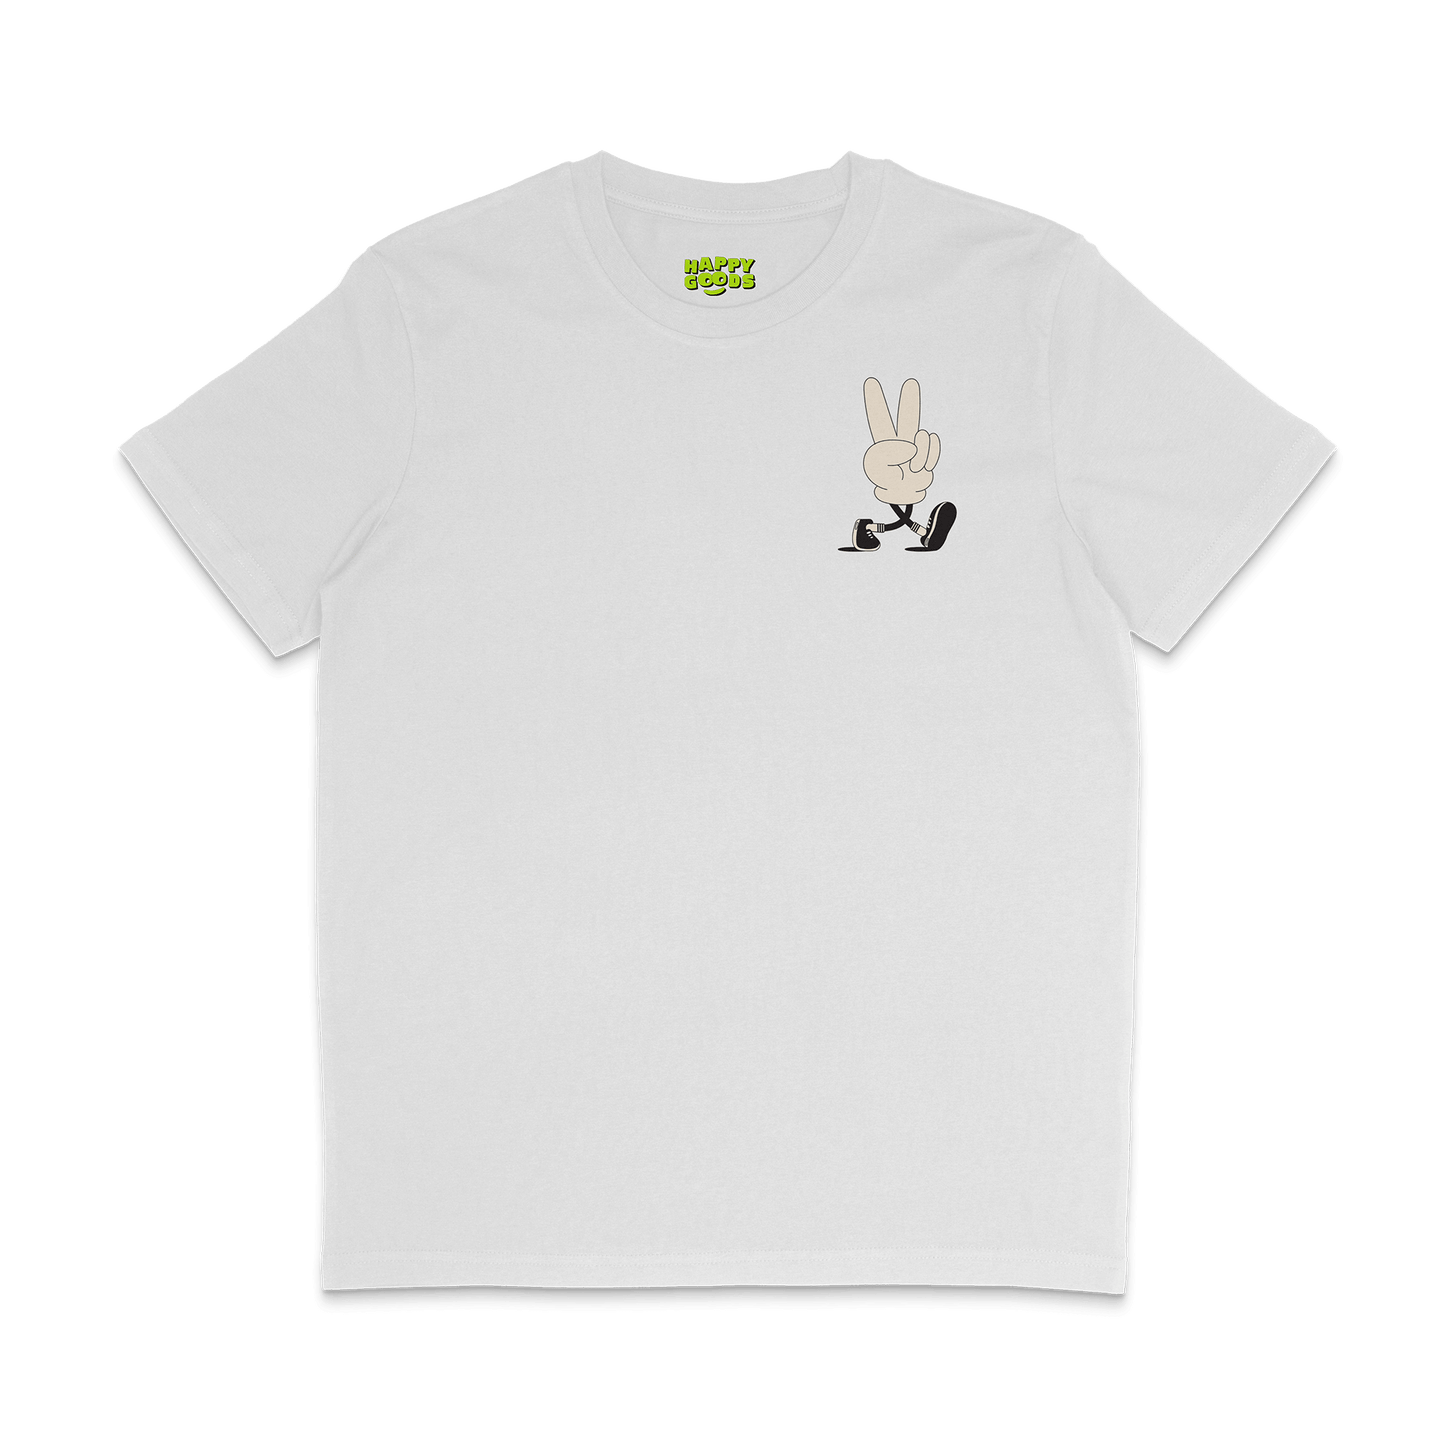 Main character energy t-shirt in cream